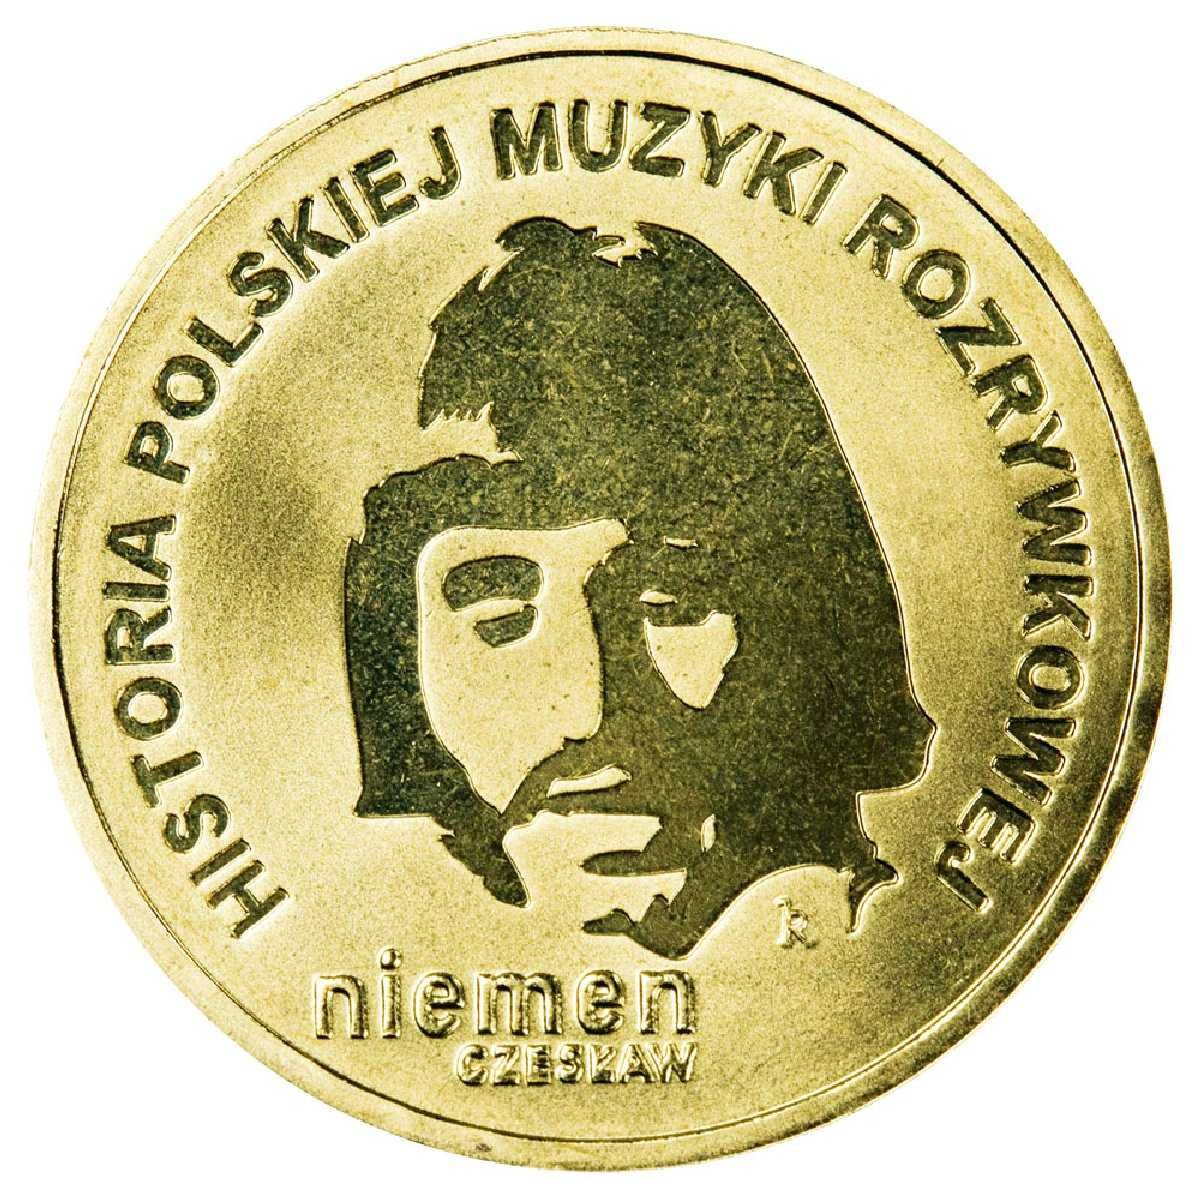 Zestaw moneta x3, folder 2009 r. CZESŁAW NIEMEN muzyka polska OKAZJA!